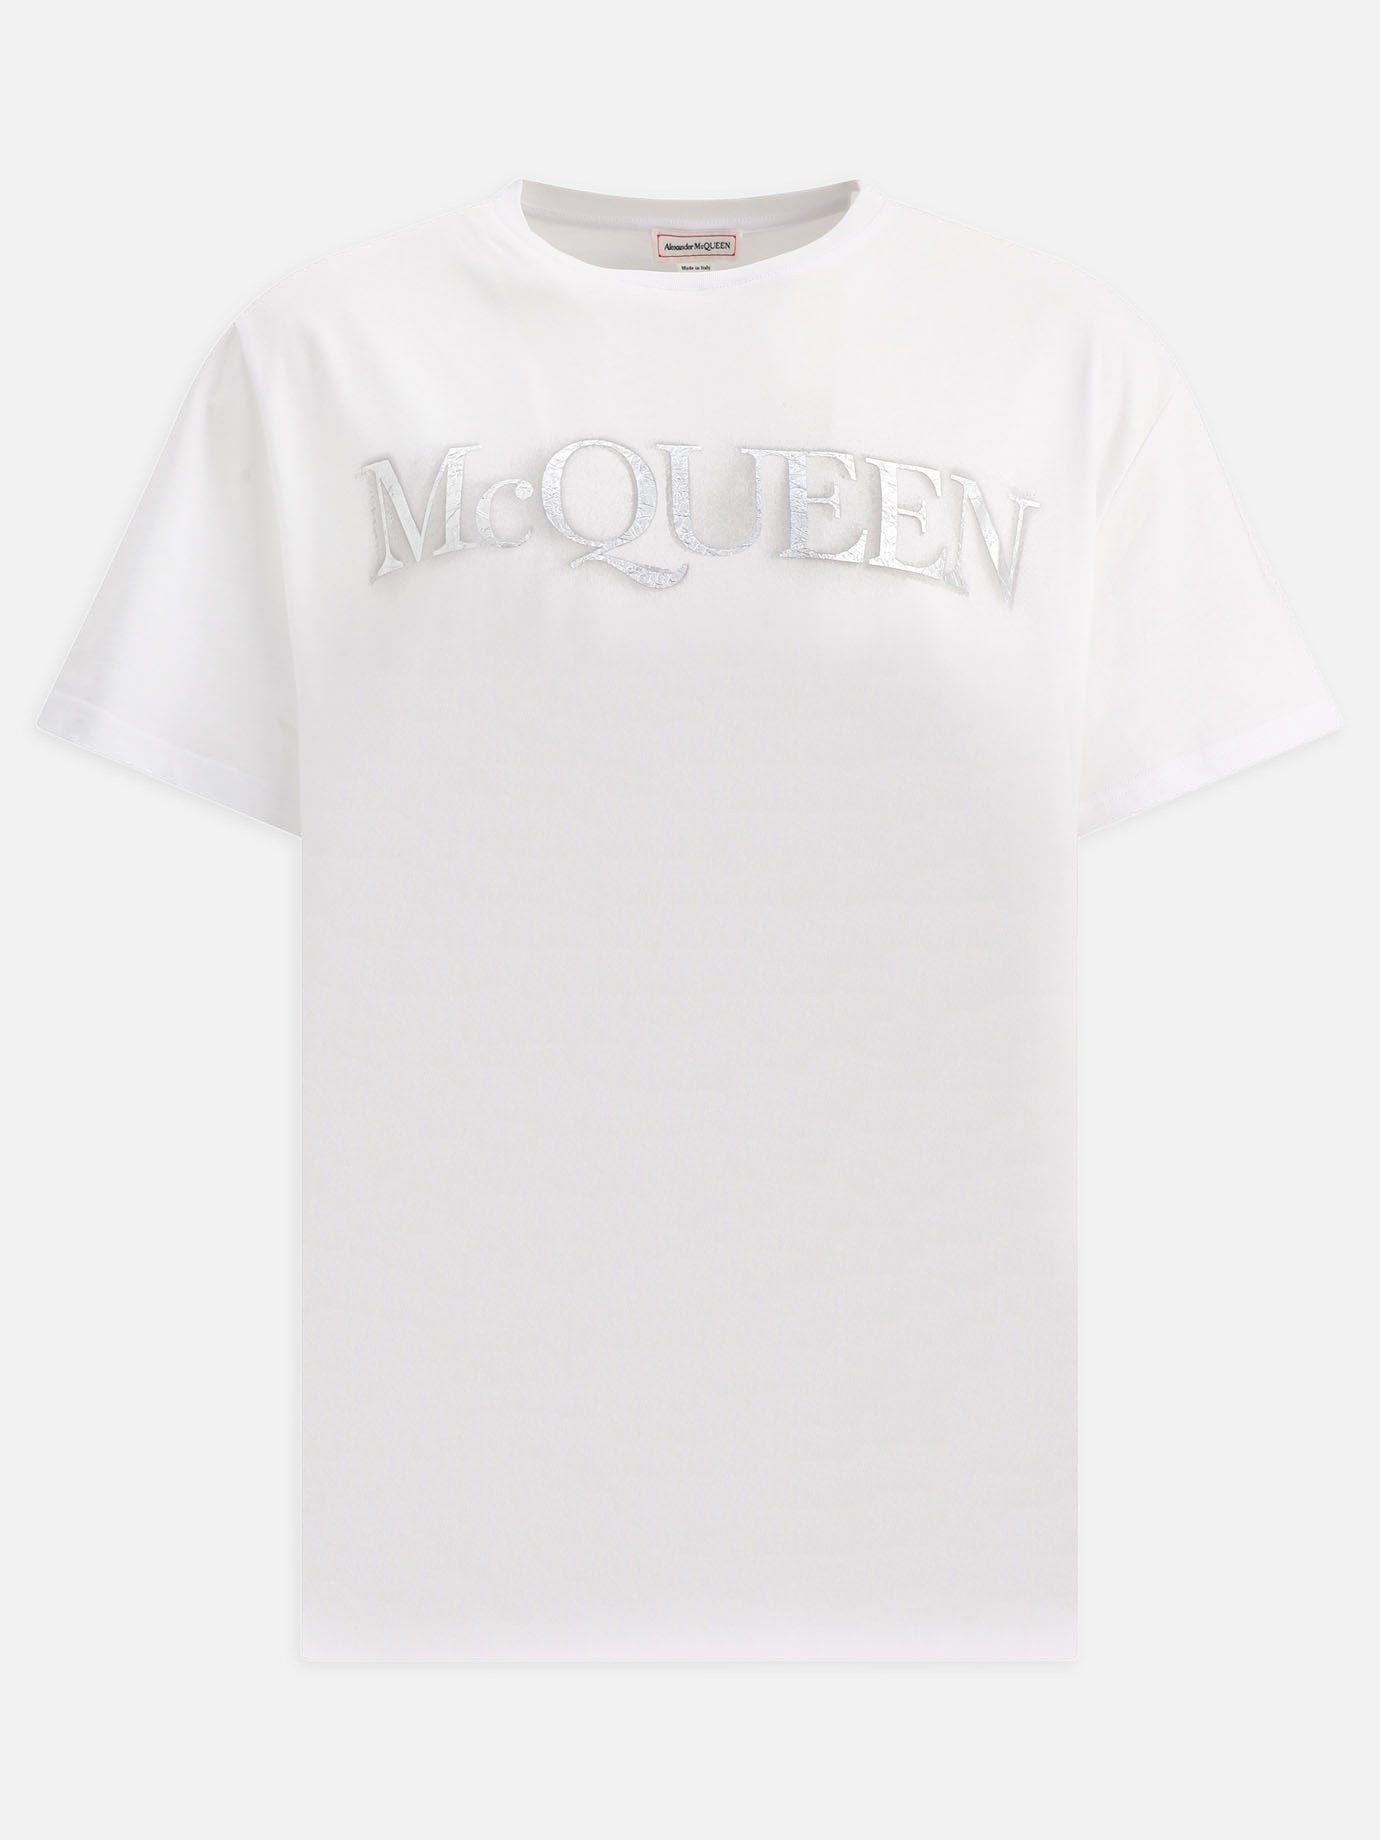 T-shirt  McQueen by Alexander McQueen - 5